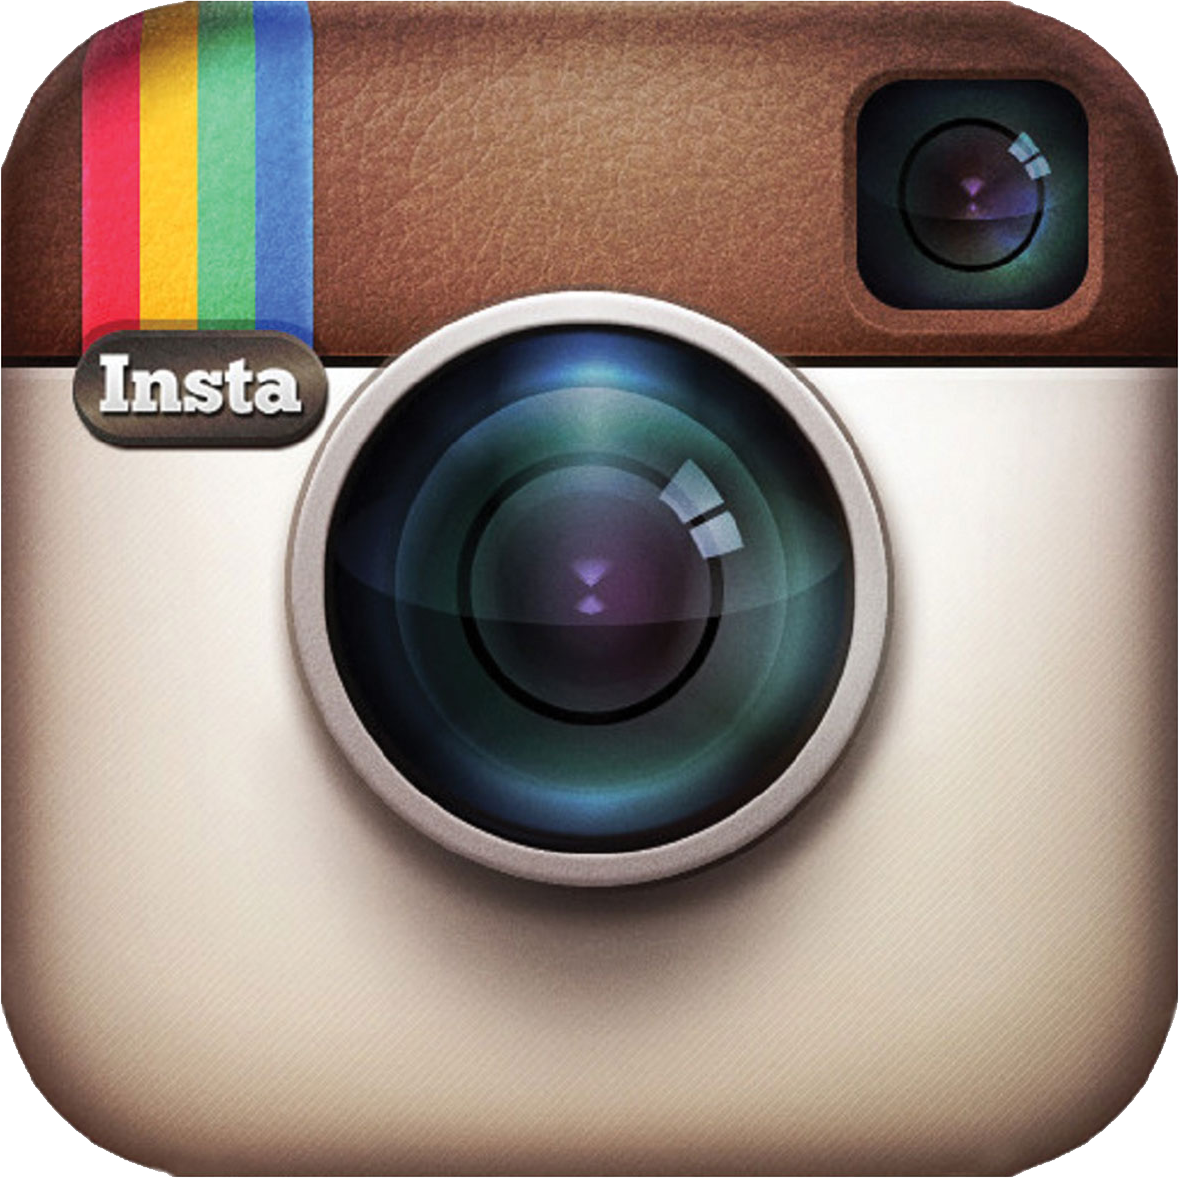 Instagram logos PNG image free download